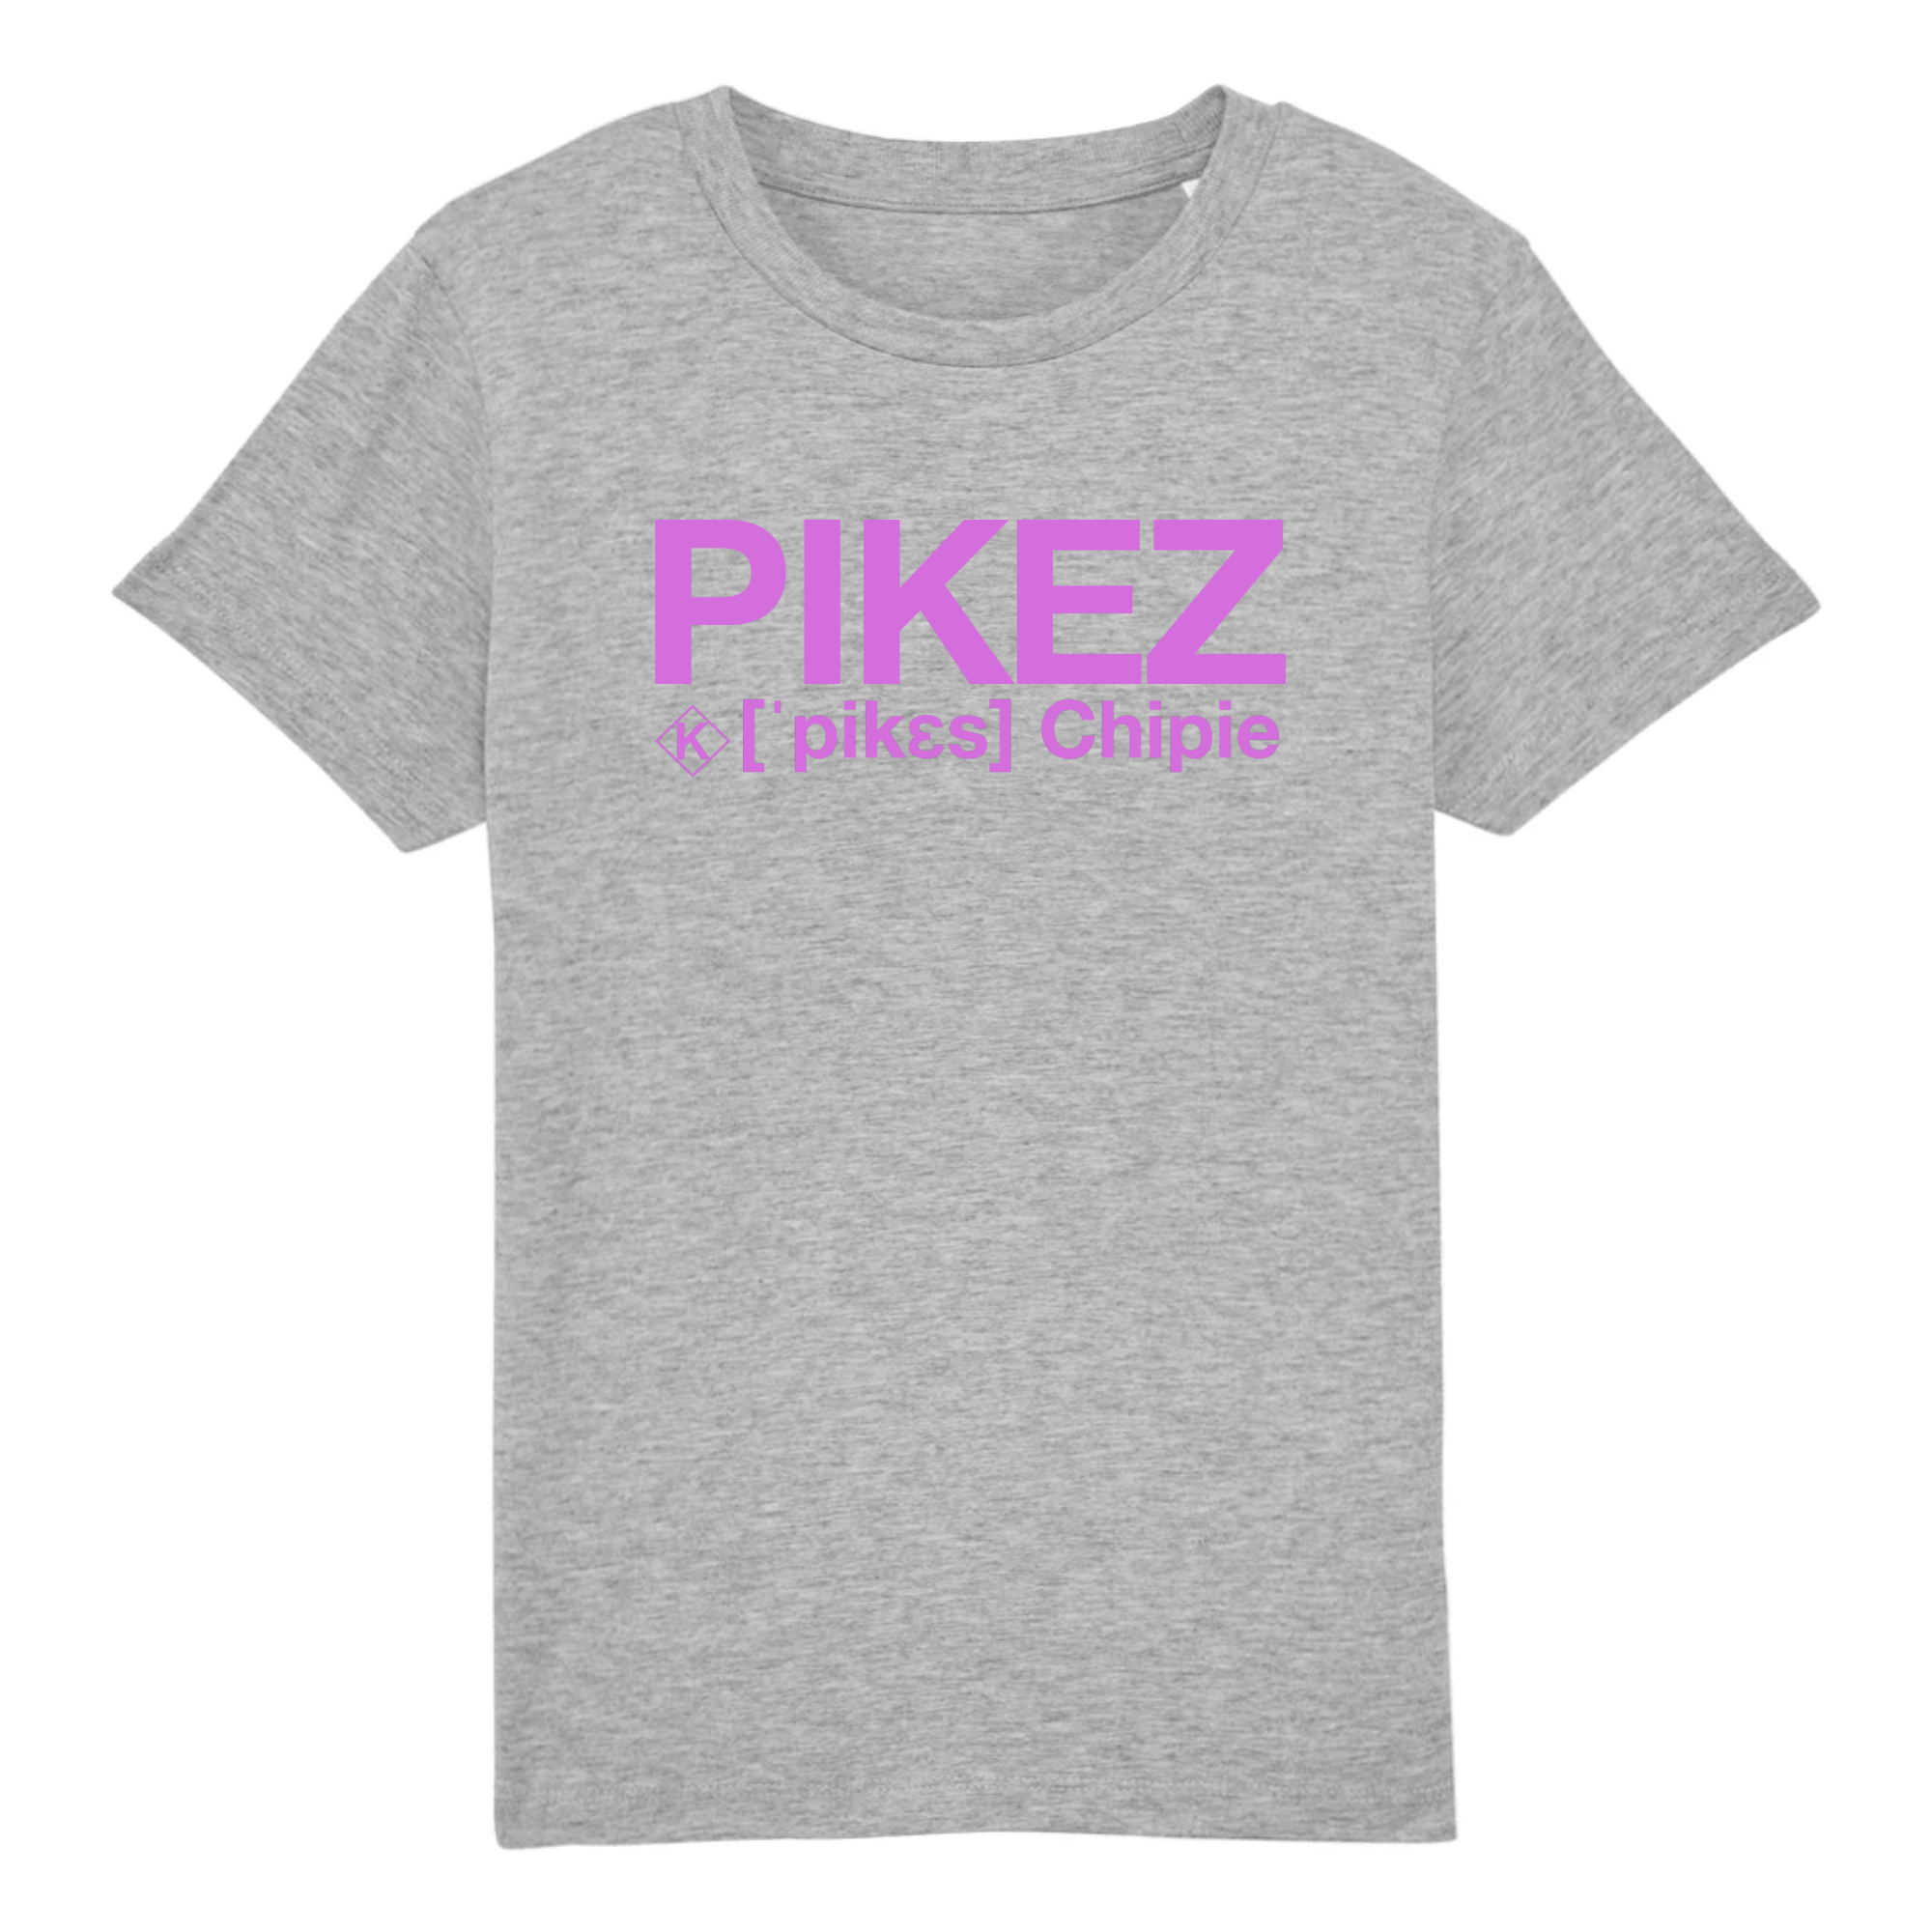 Pikez Tshirt (Chipie) Rose